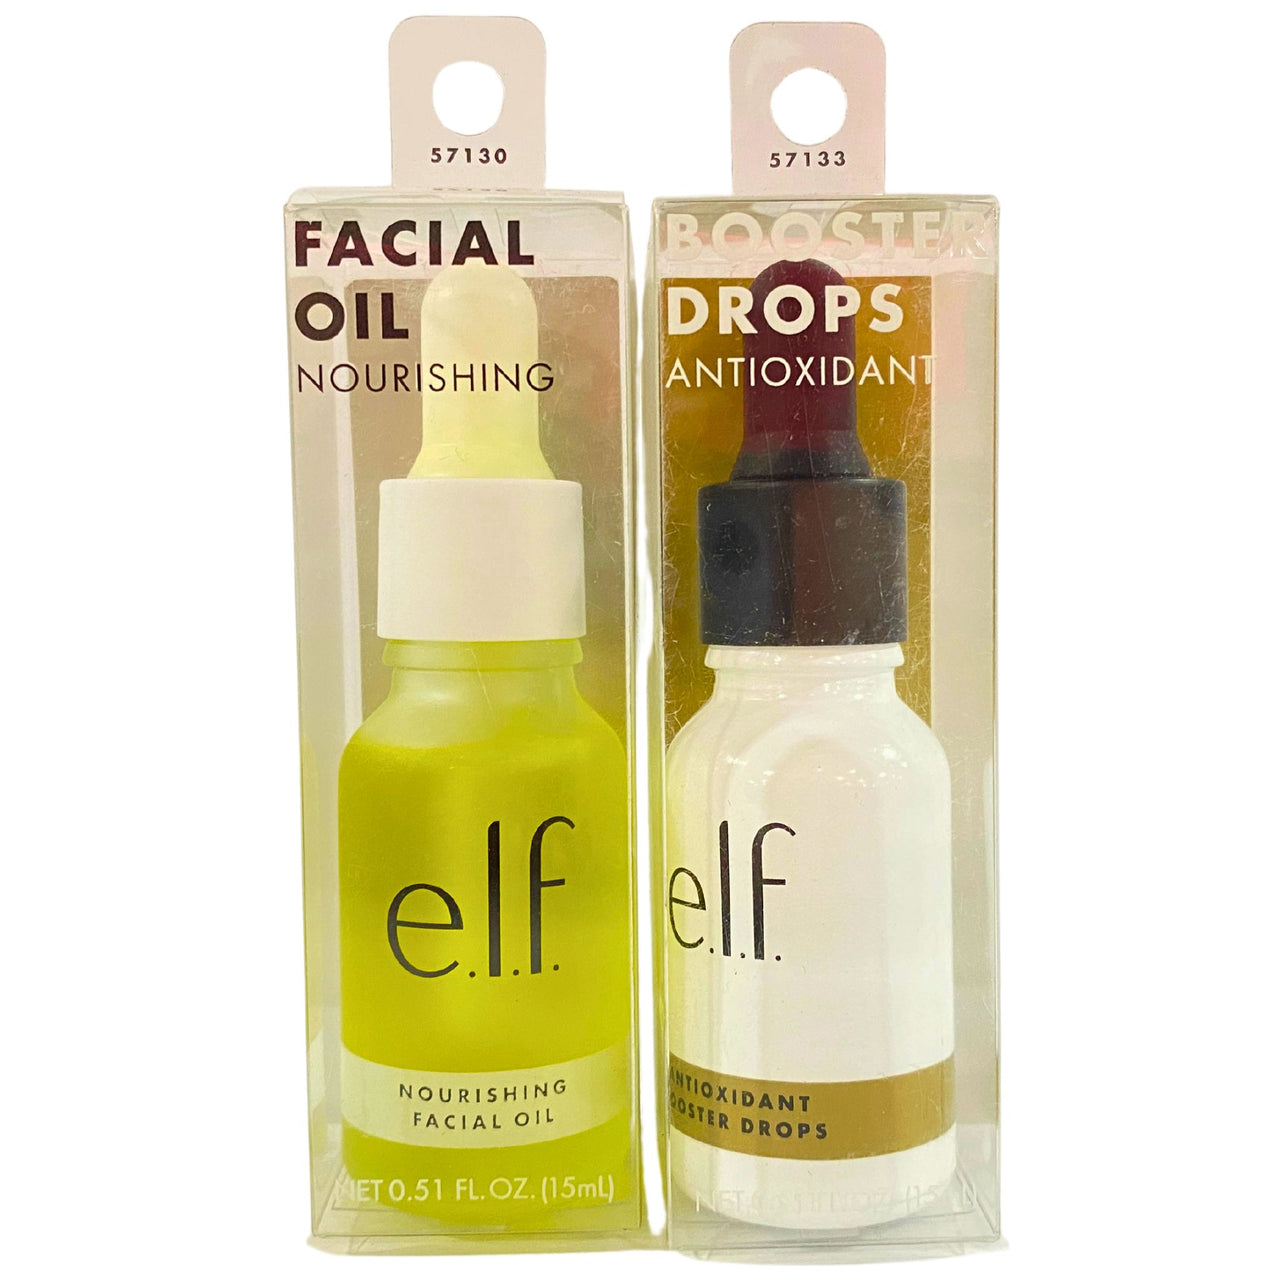 Elf Nourishing Facial Oil & Booster Drops